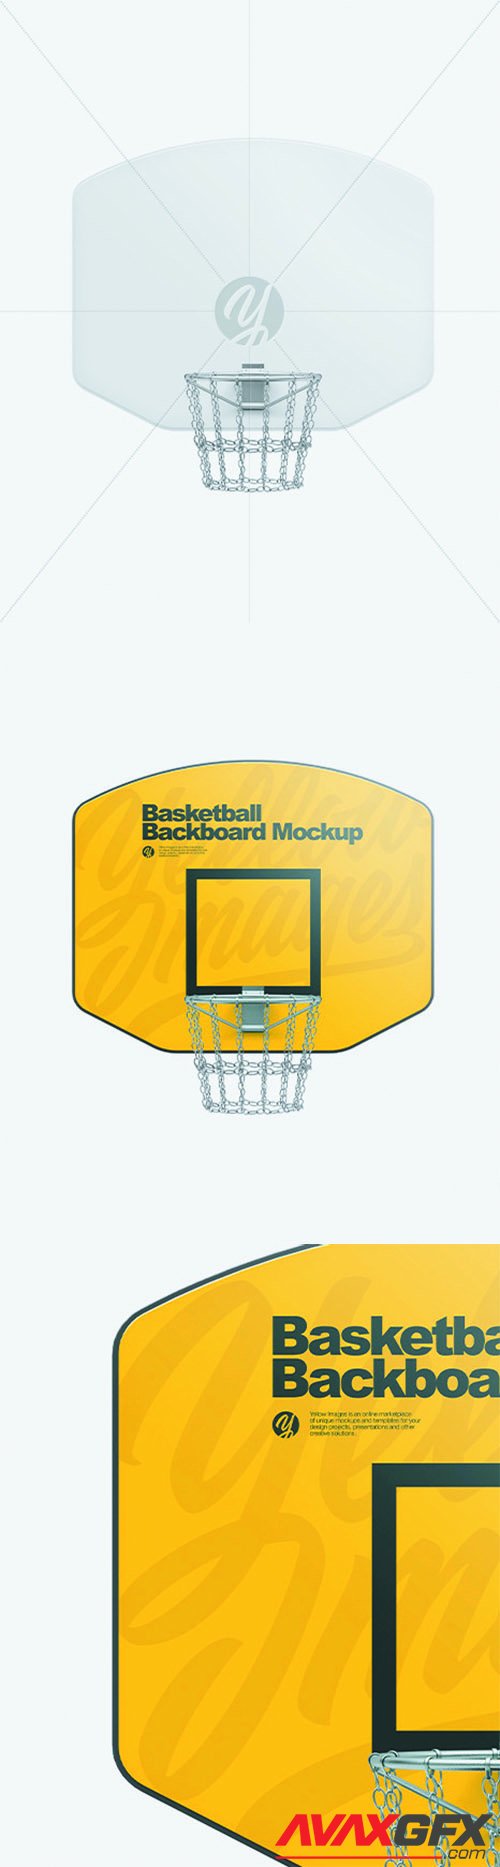 Basketball Backboard Mockup 68642